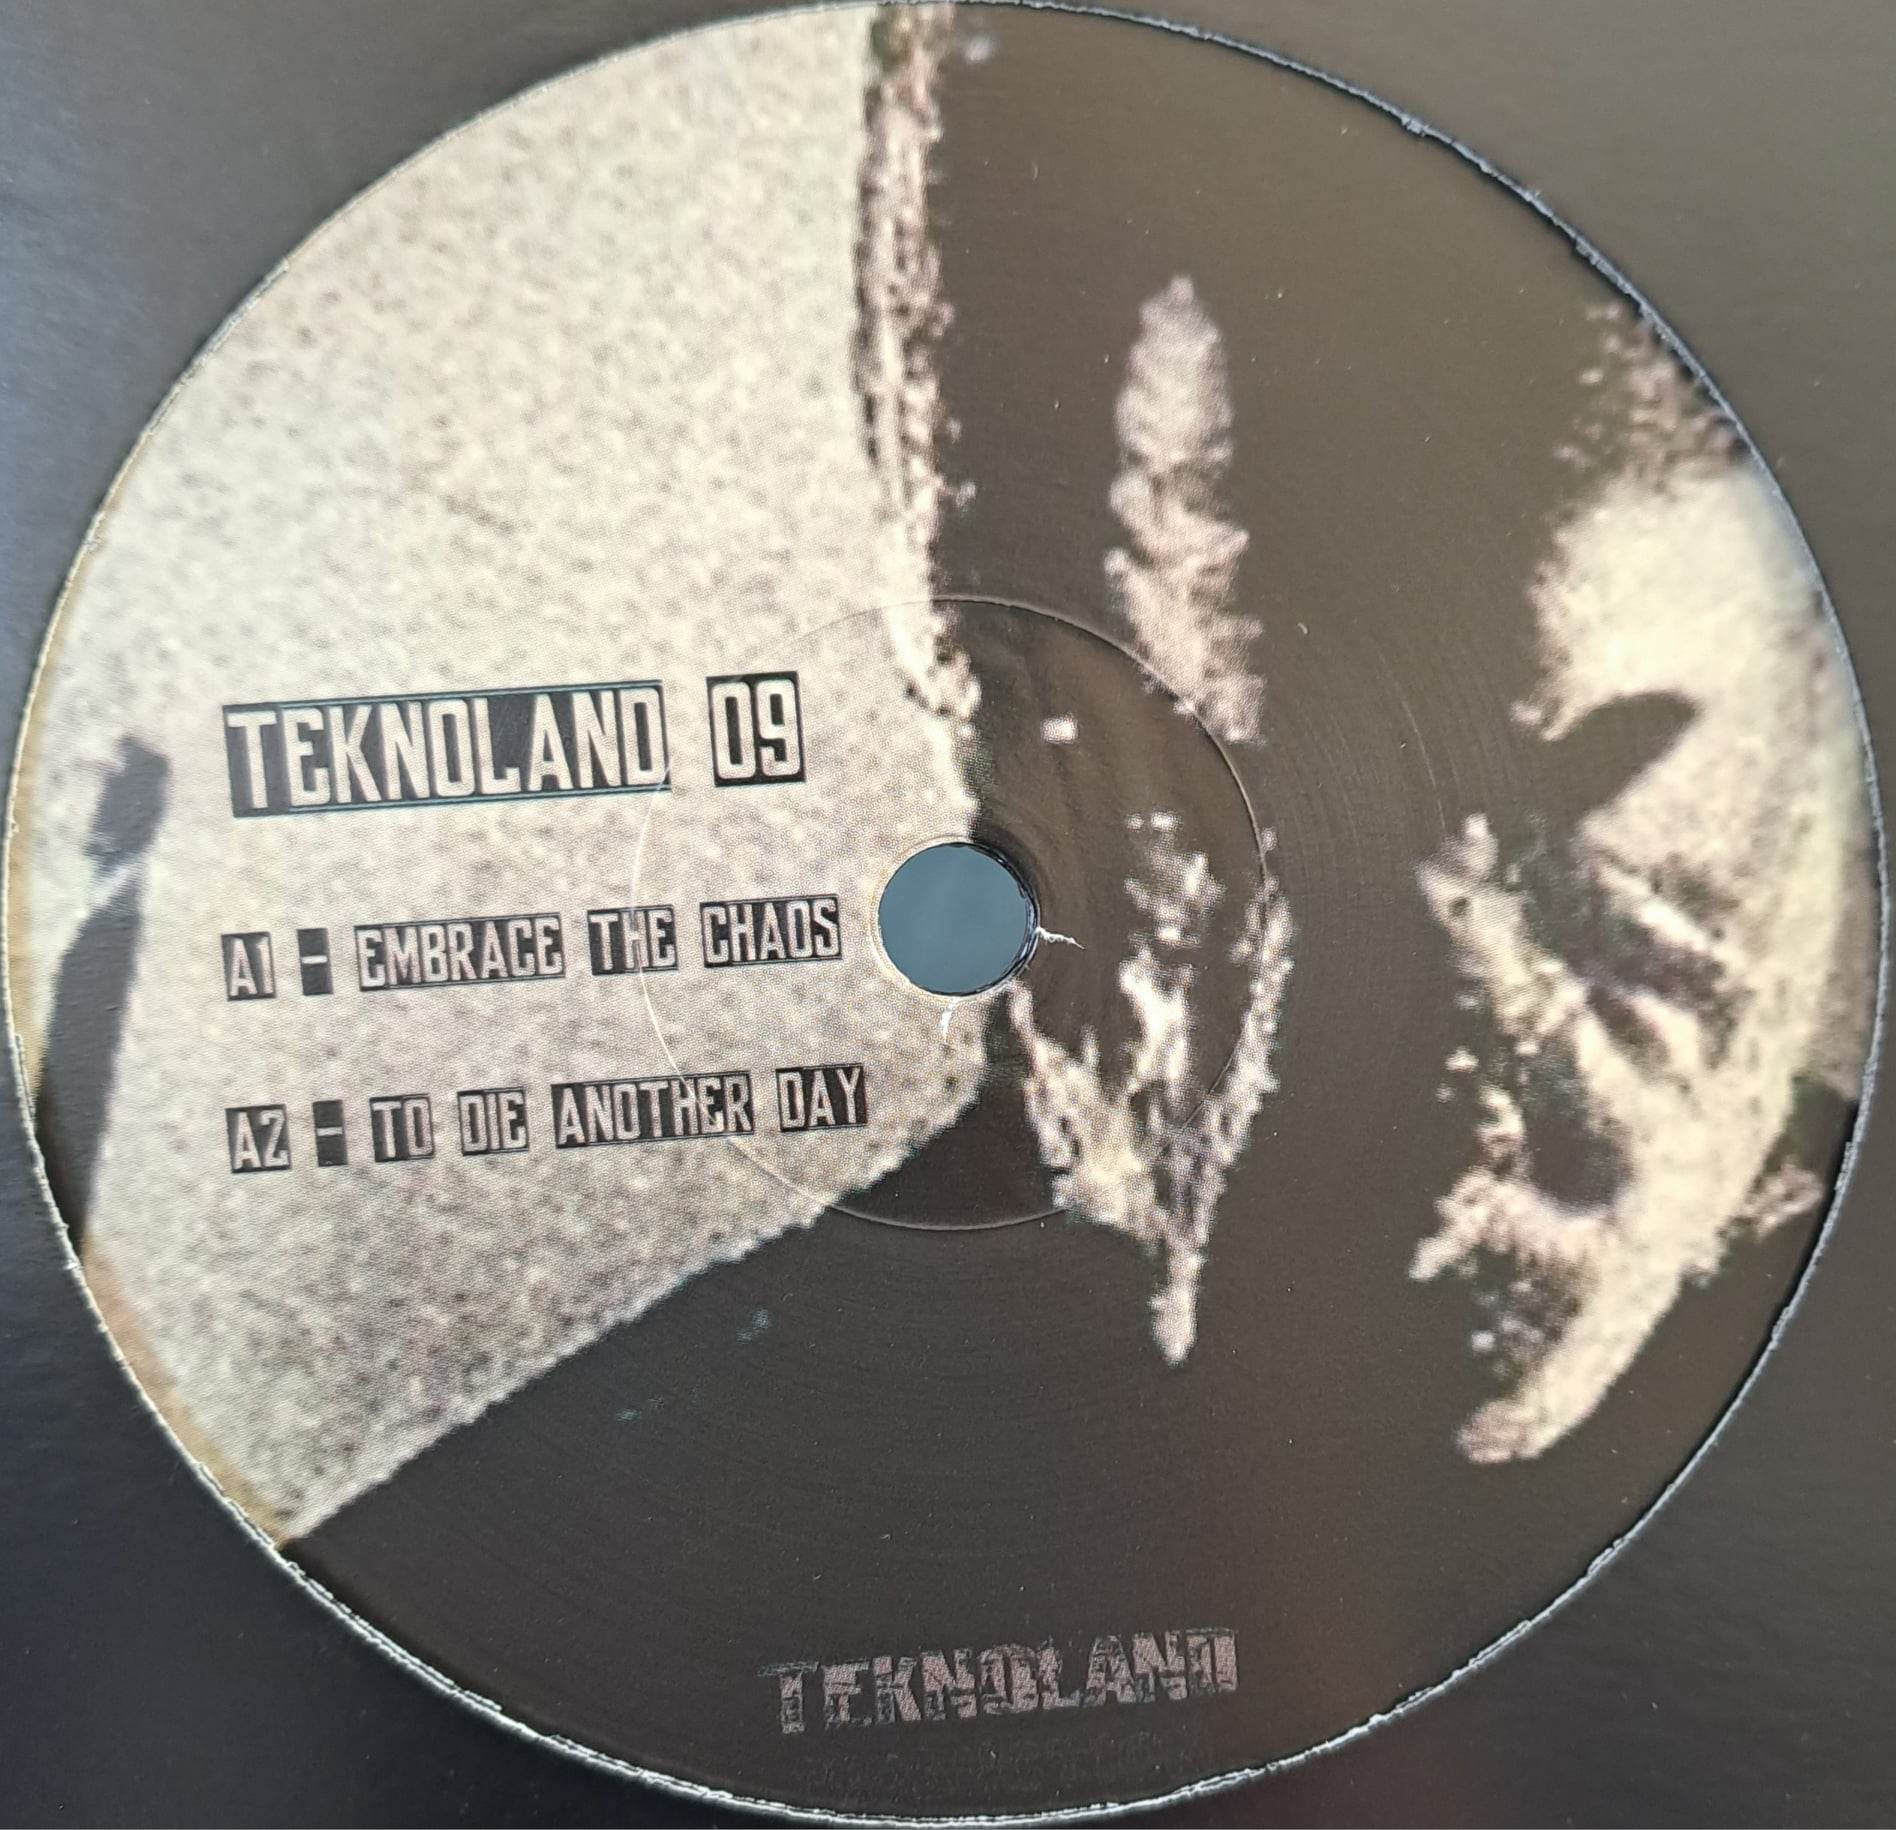 Teknoland 09 (toute dernière copie en stock) - vinyle hardcore